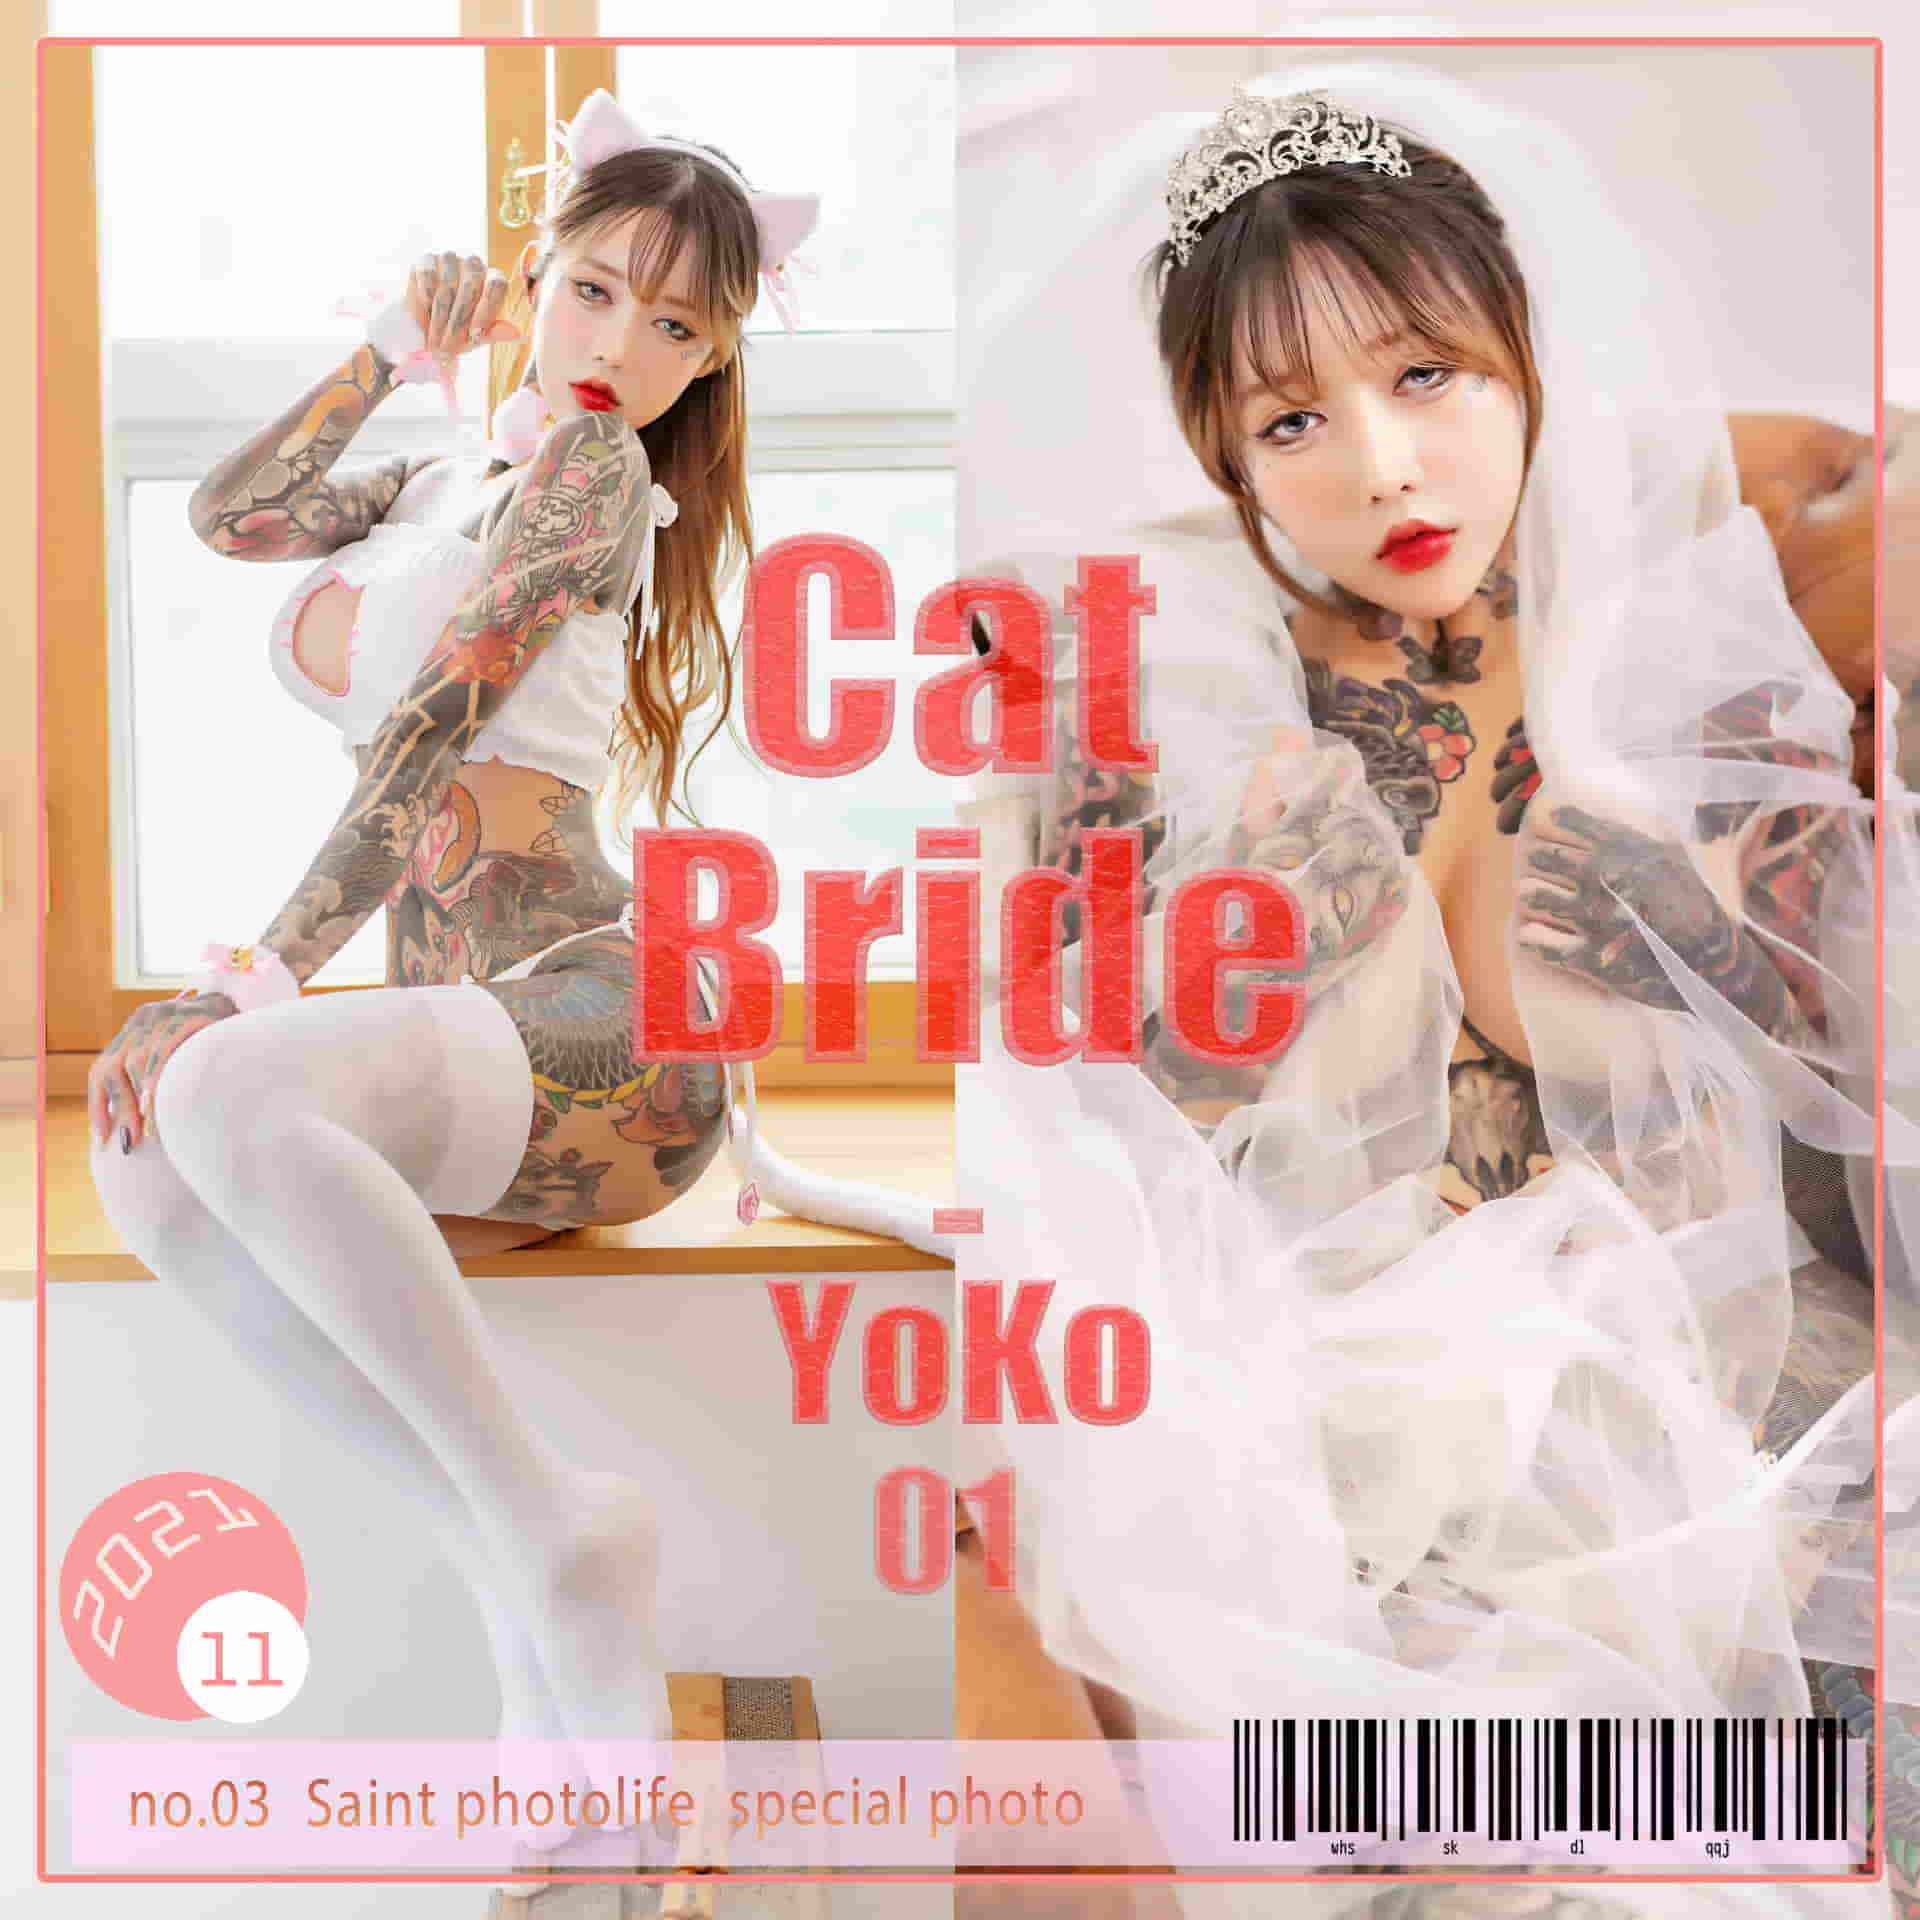 YoKo_tattoo [Saint Photo Life] YoKo Vol.01 Cat Bride